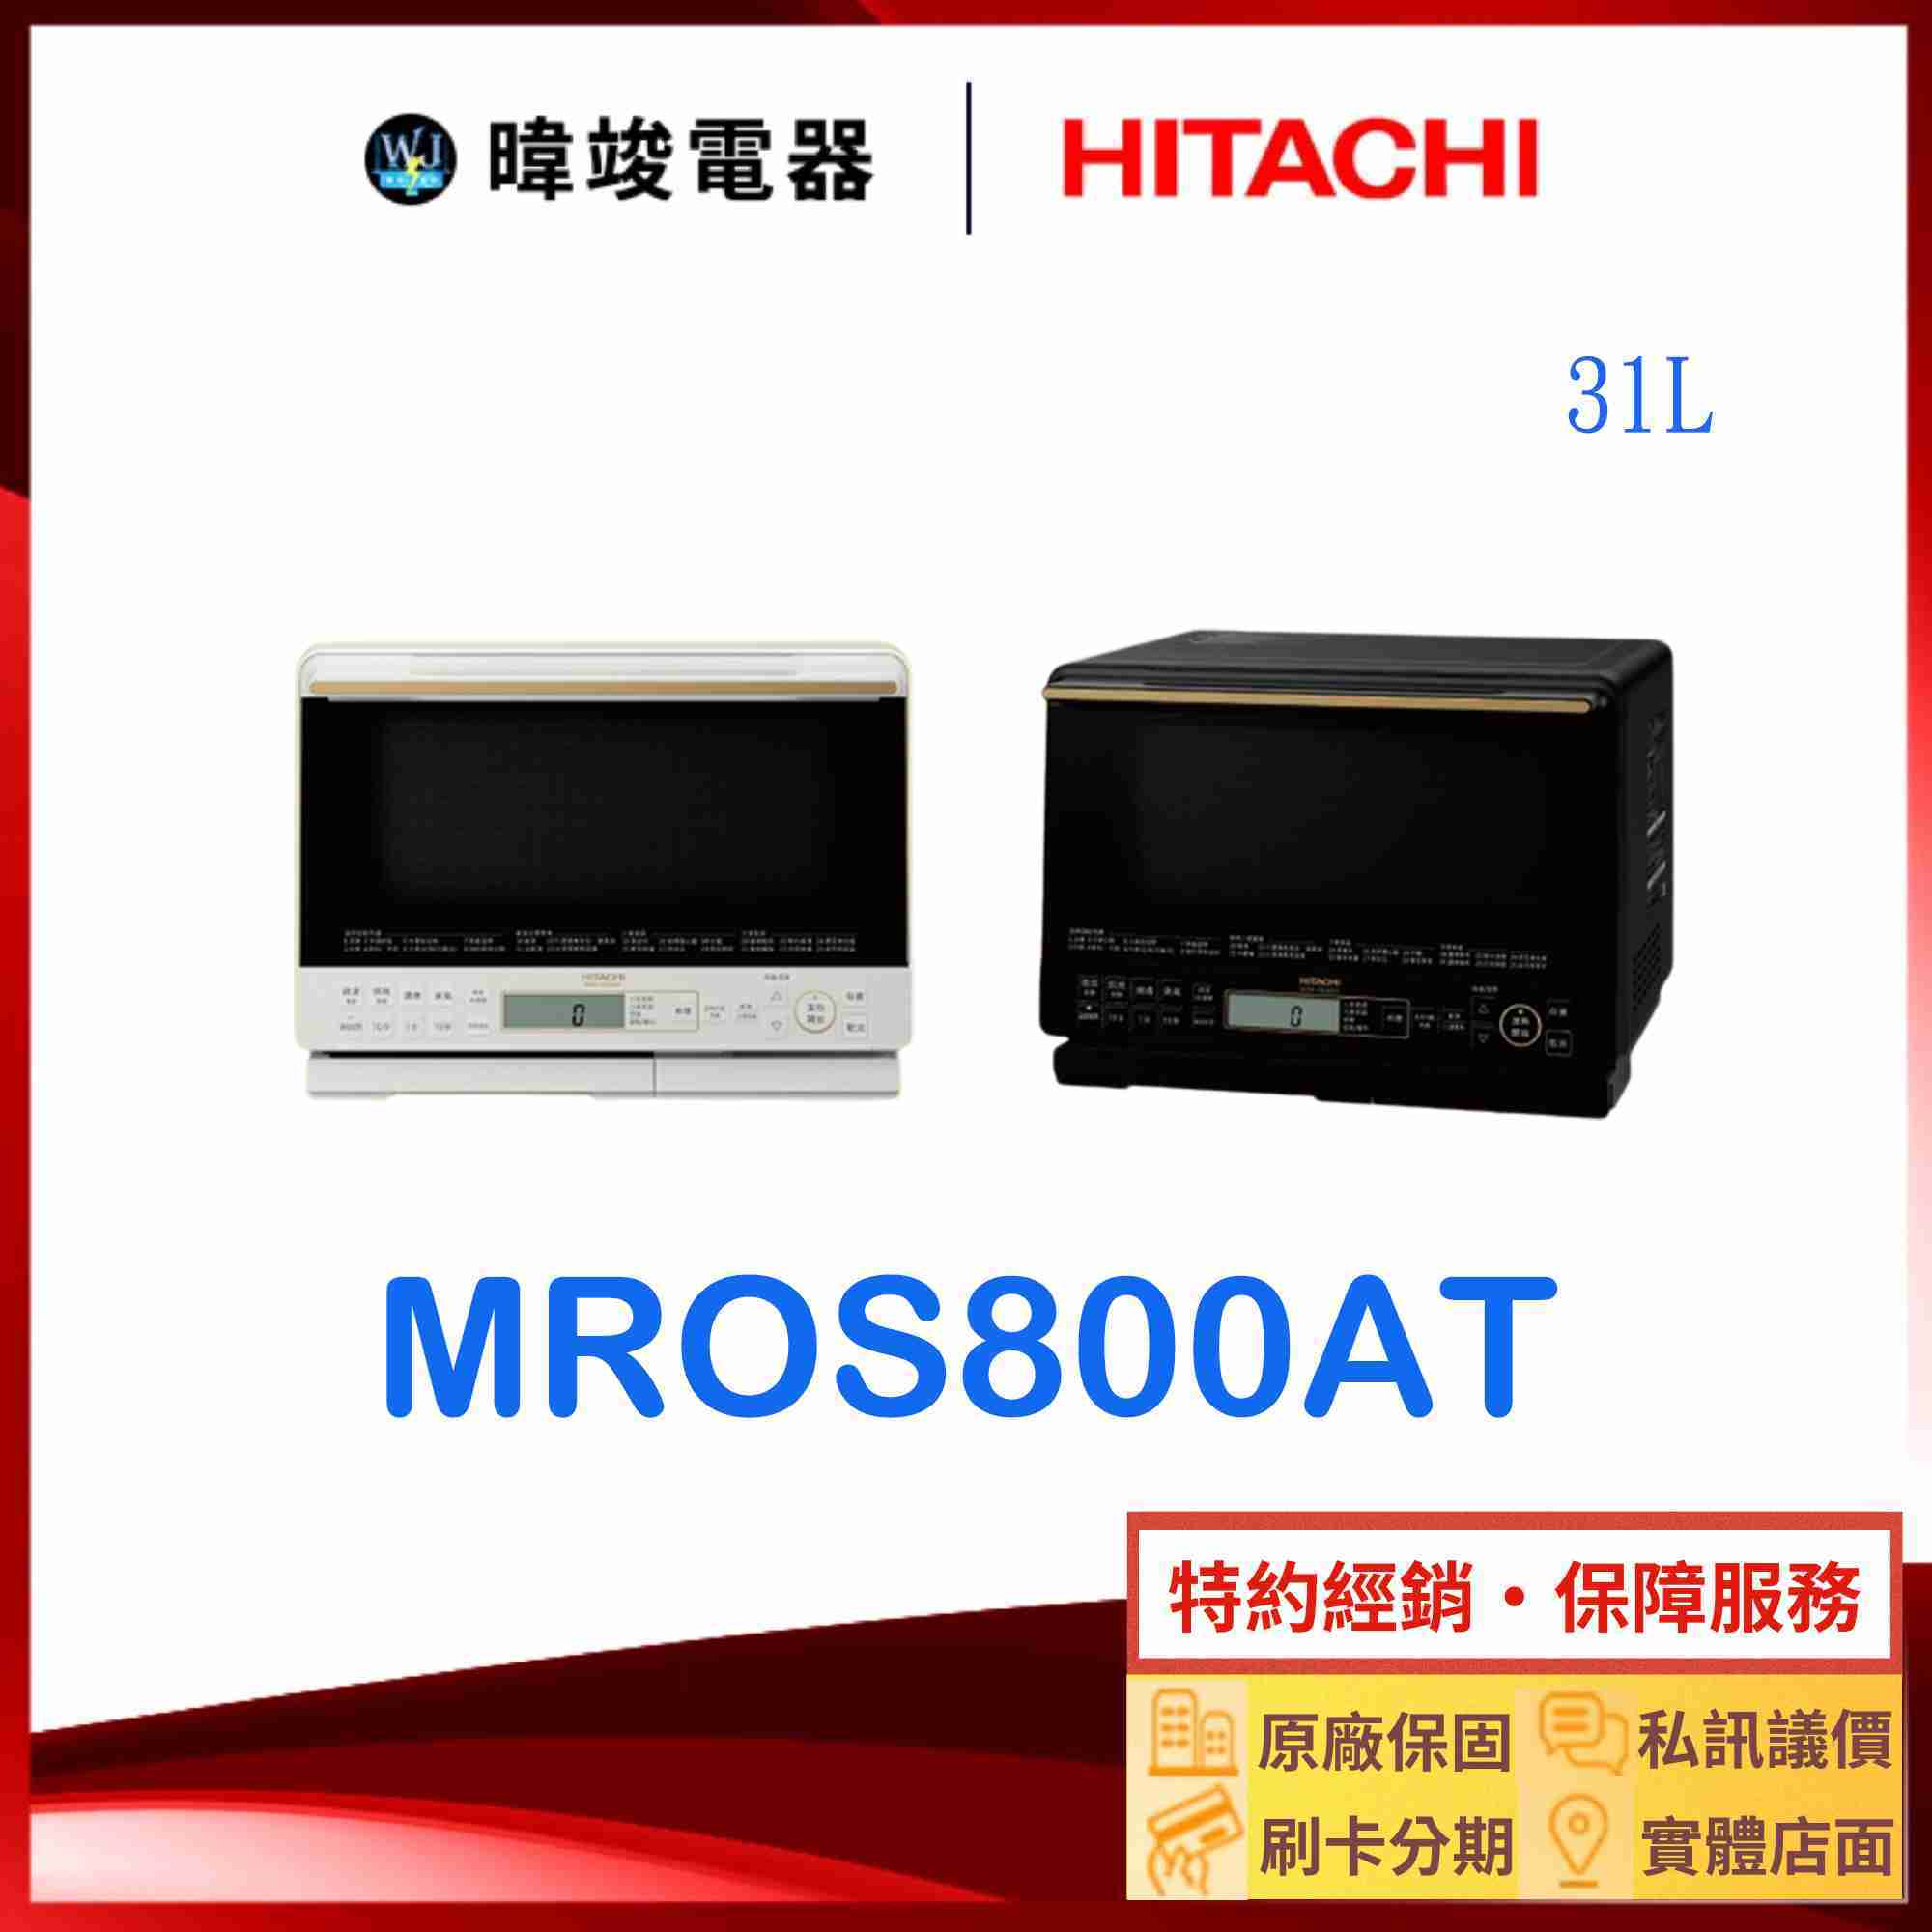 現貨【獨家折扣碼】HITACHI 日立 MROS800AT 過熱水蒸氣烘烤微波爐 取代MROS800XT 水波爐 微波爐